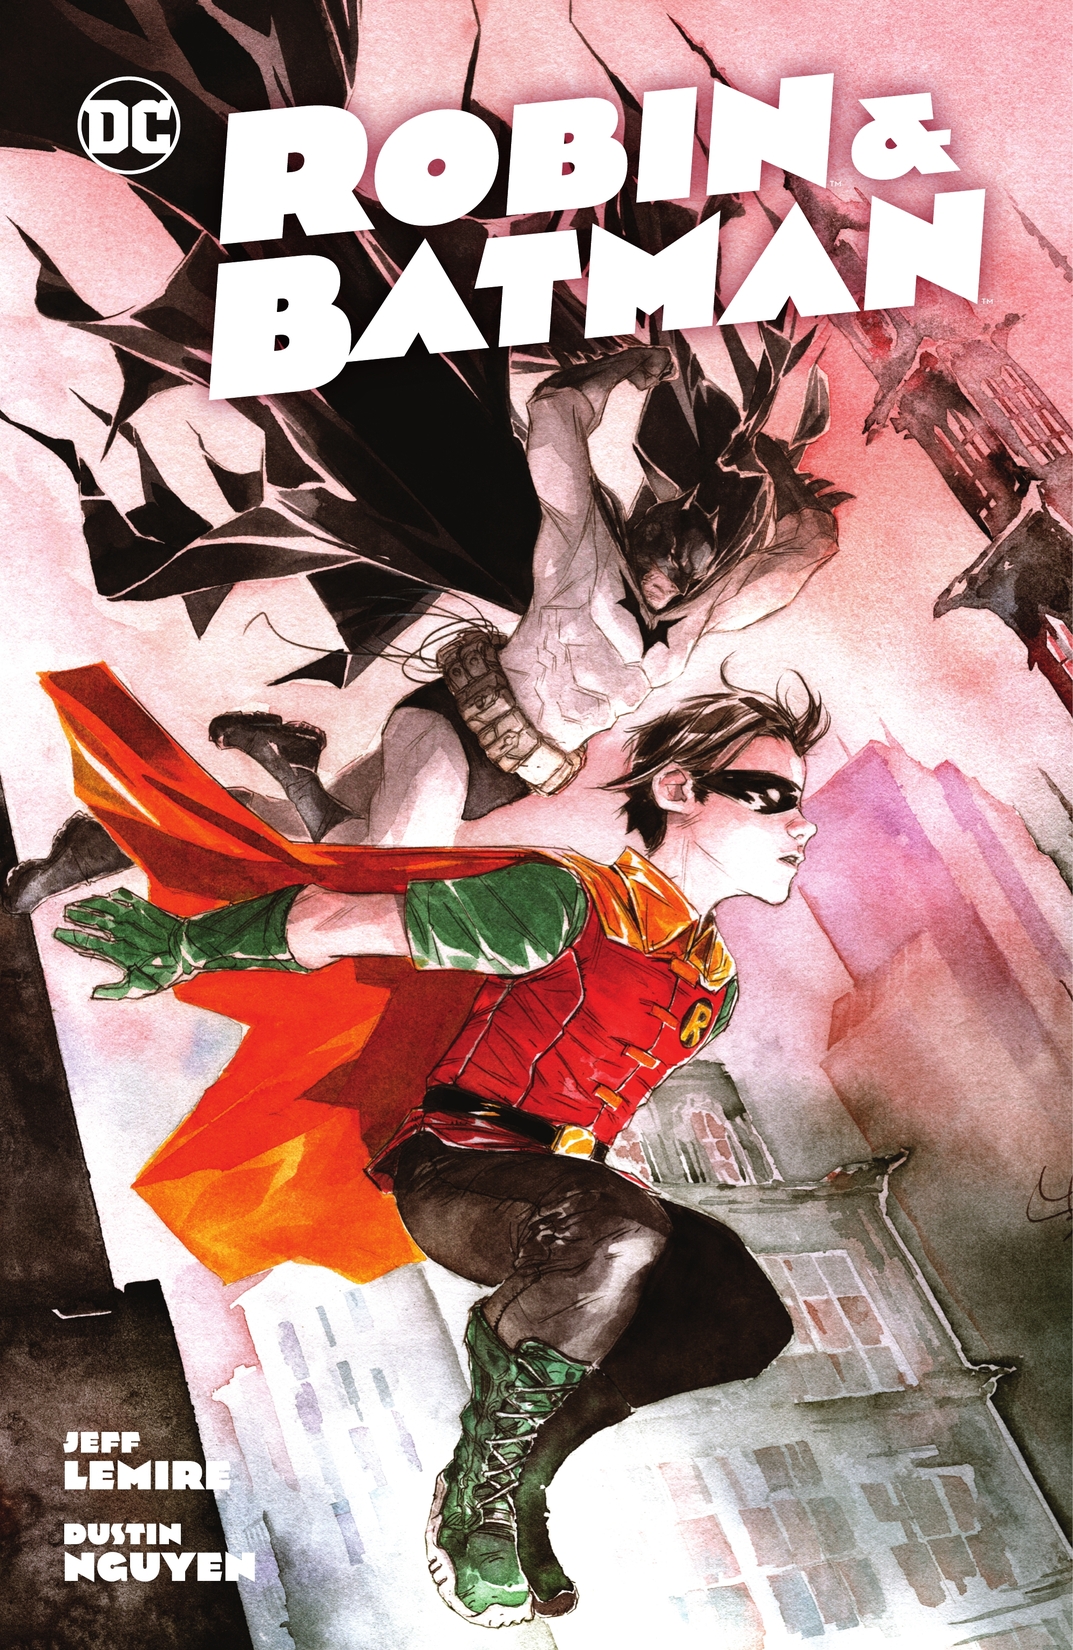 Robin & Batman preview images